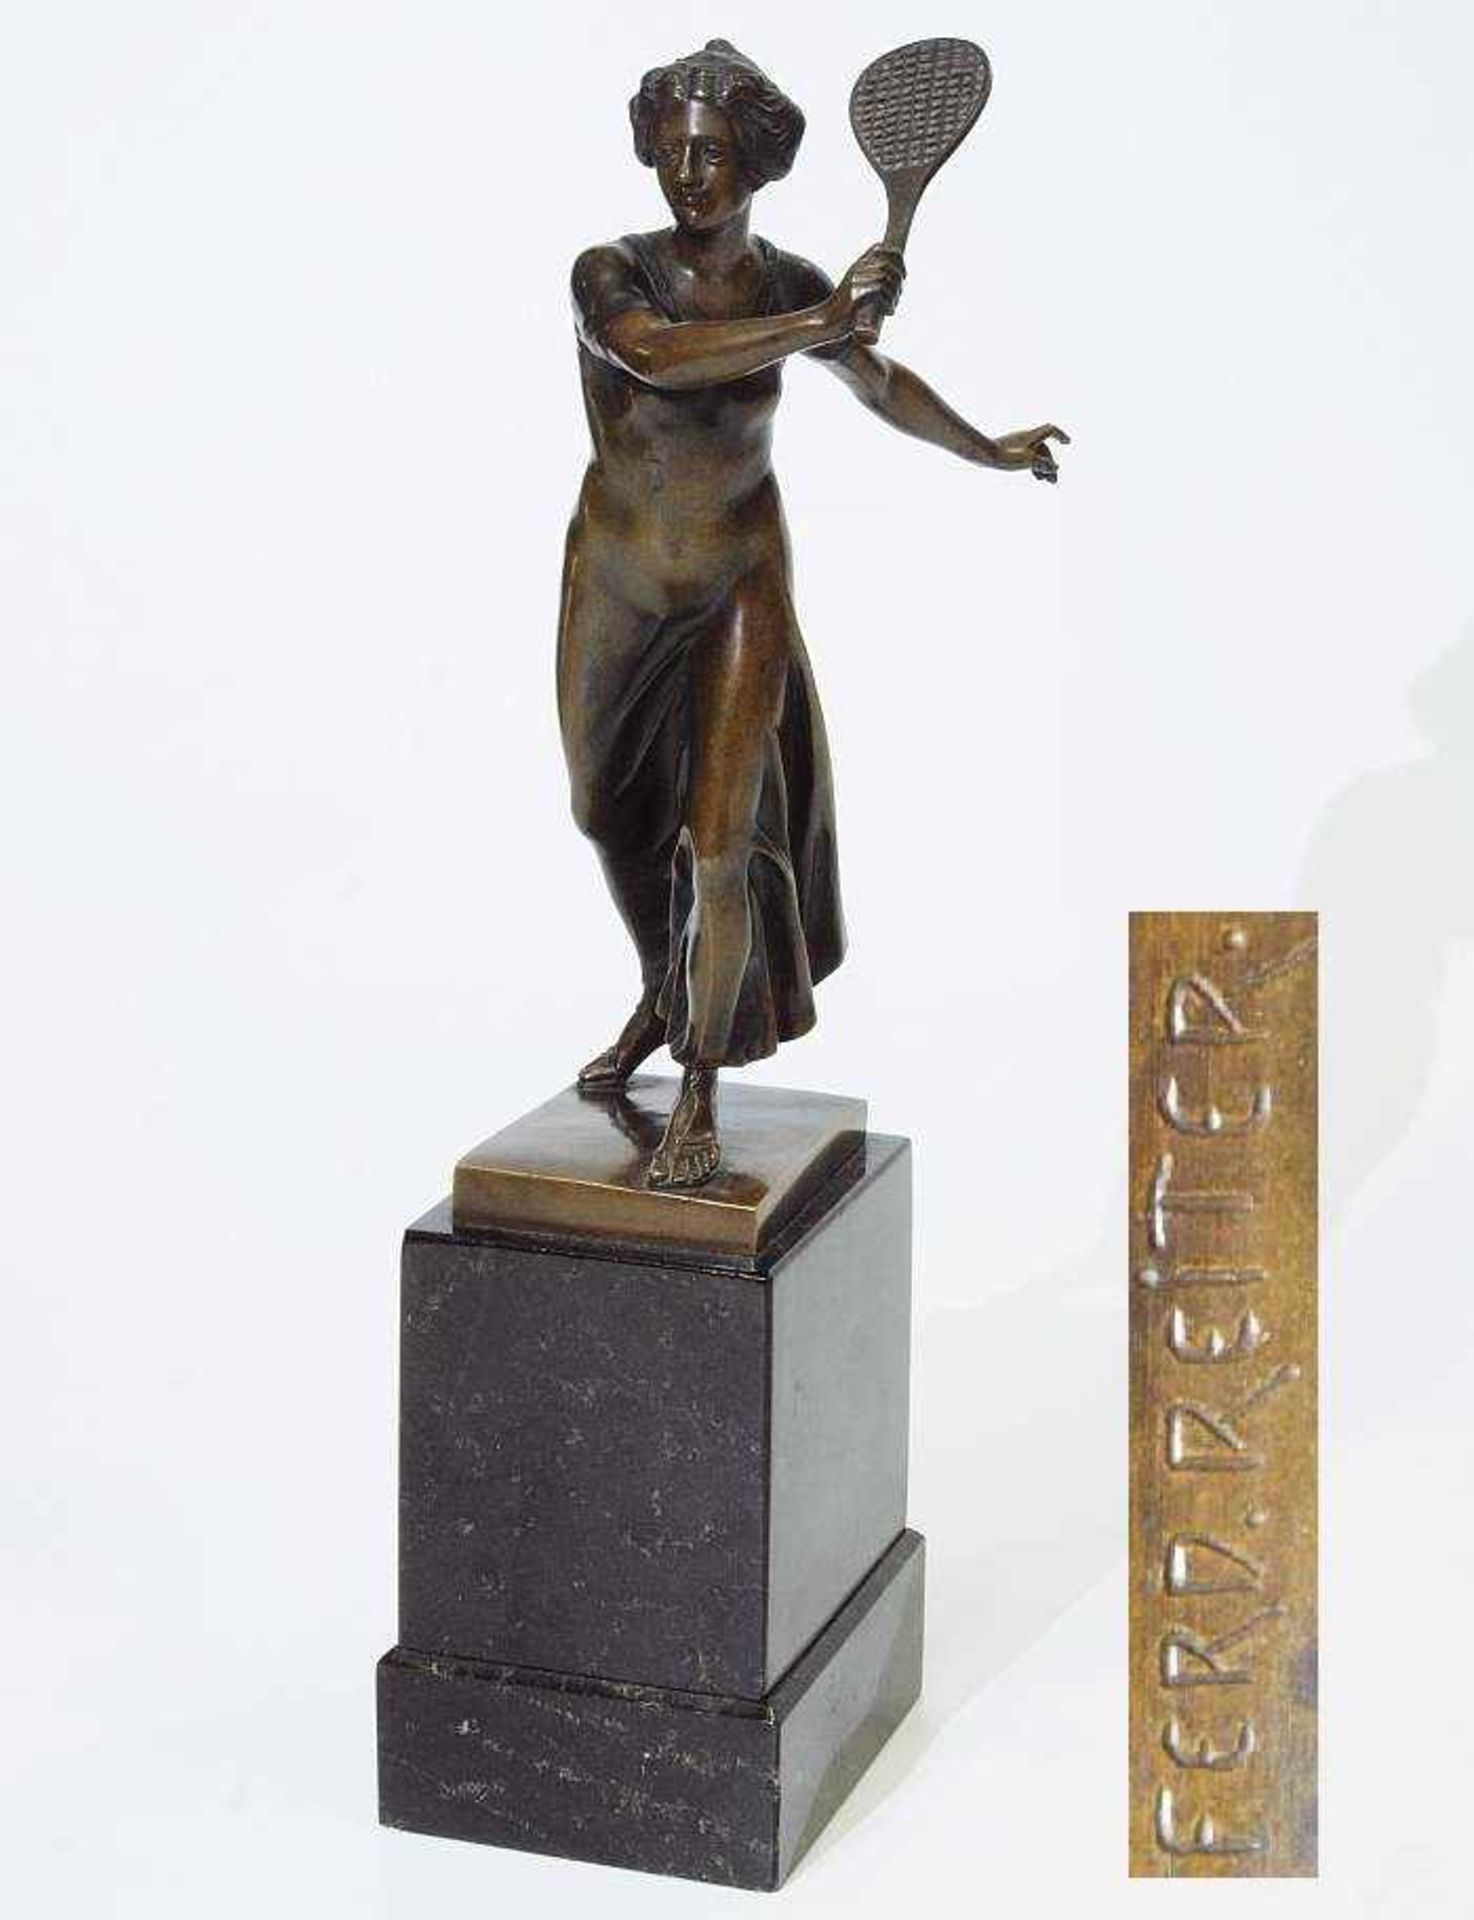 REITER, Ferd.REITER, Ferd., 20. Jahrhundert. Wohl Bronze. Tennisspielerin in bewegter